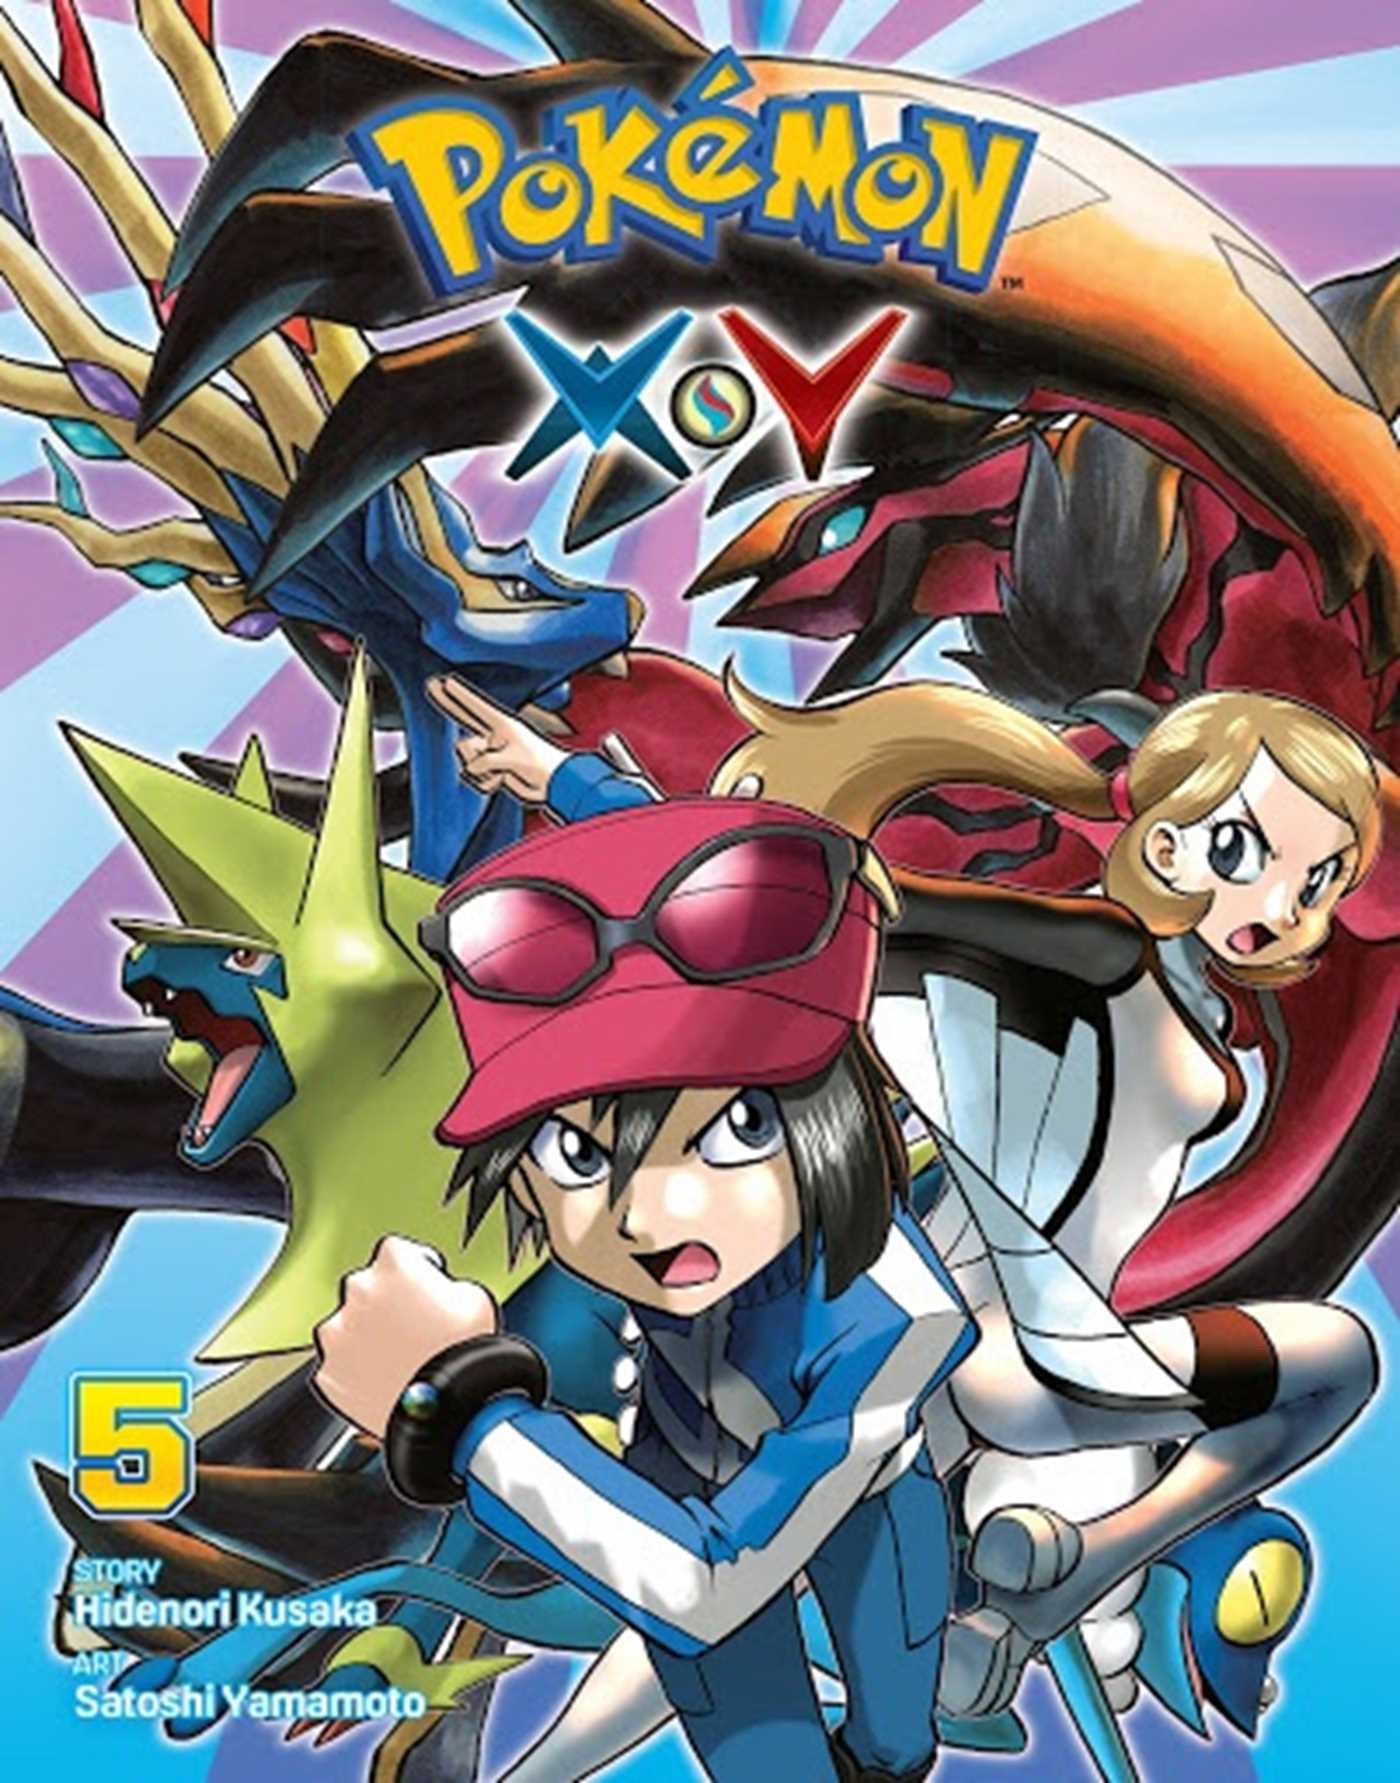 Pokémon X•Y Vol. 5 by Hidenori Kusaka